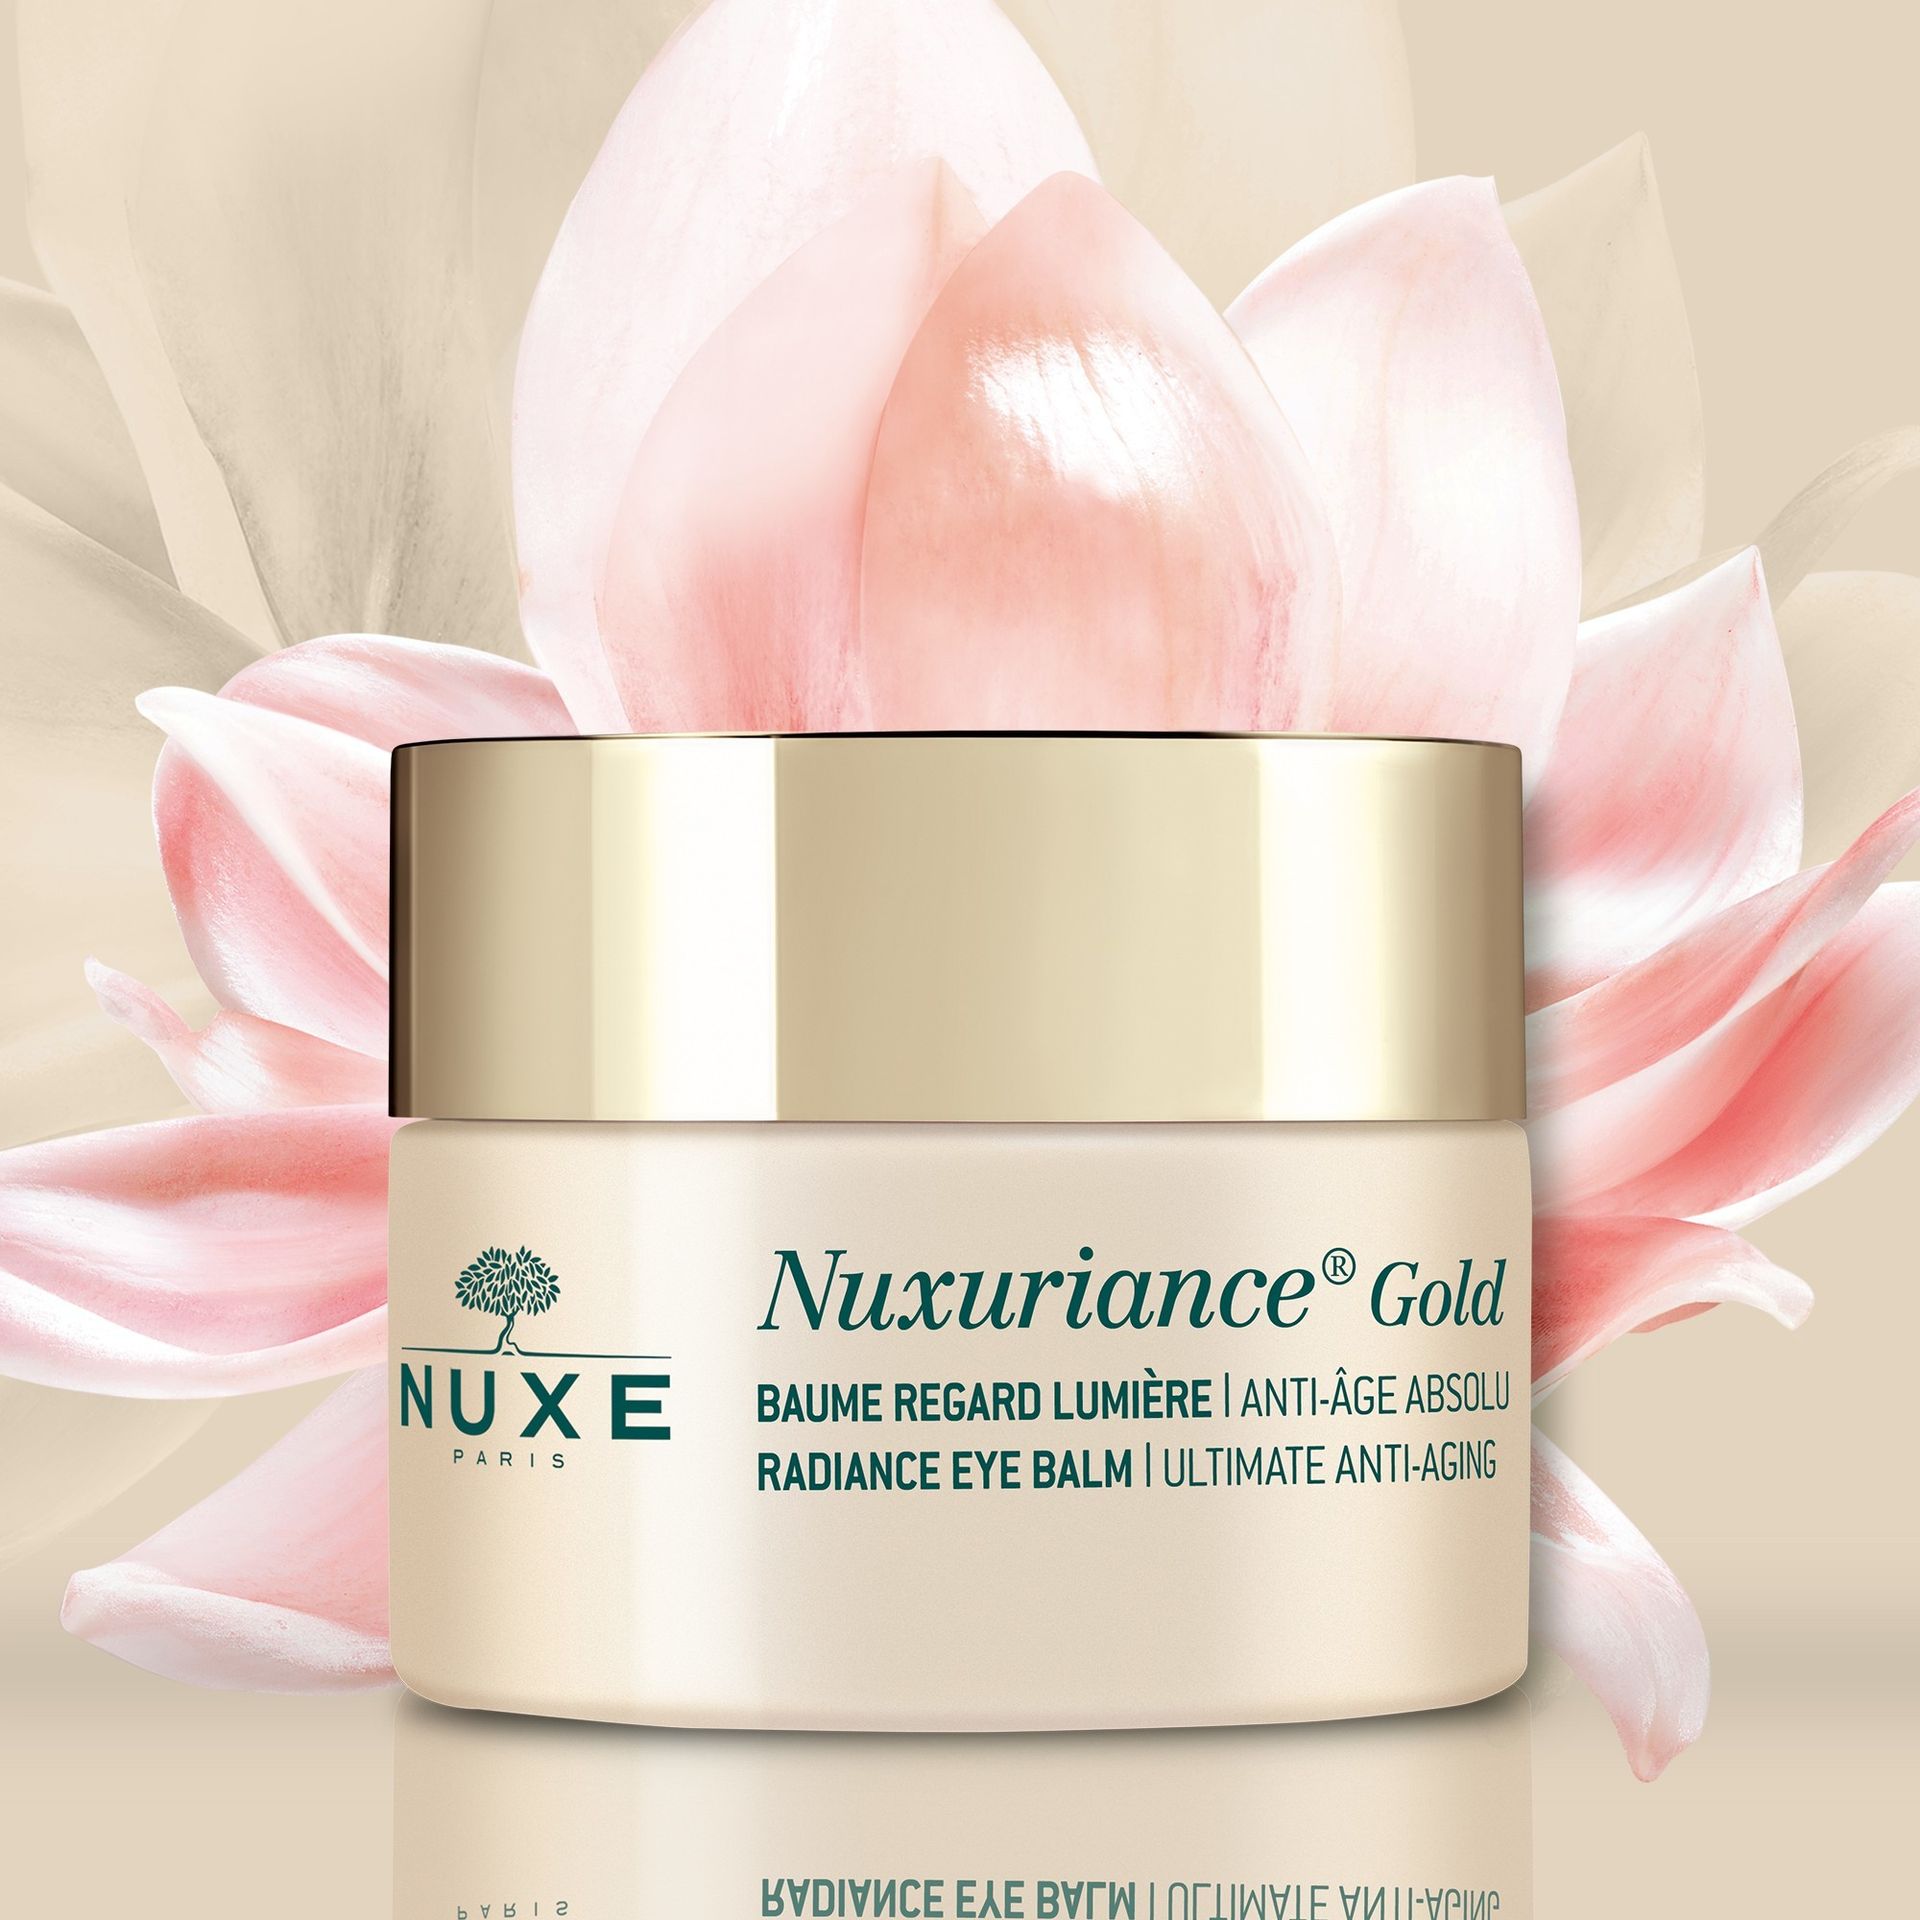 Nuxe Nuxuriance Gold rozświetlający balsam pod oczy 15 ml